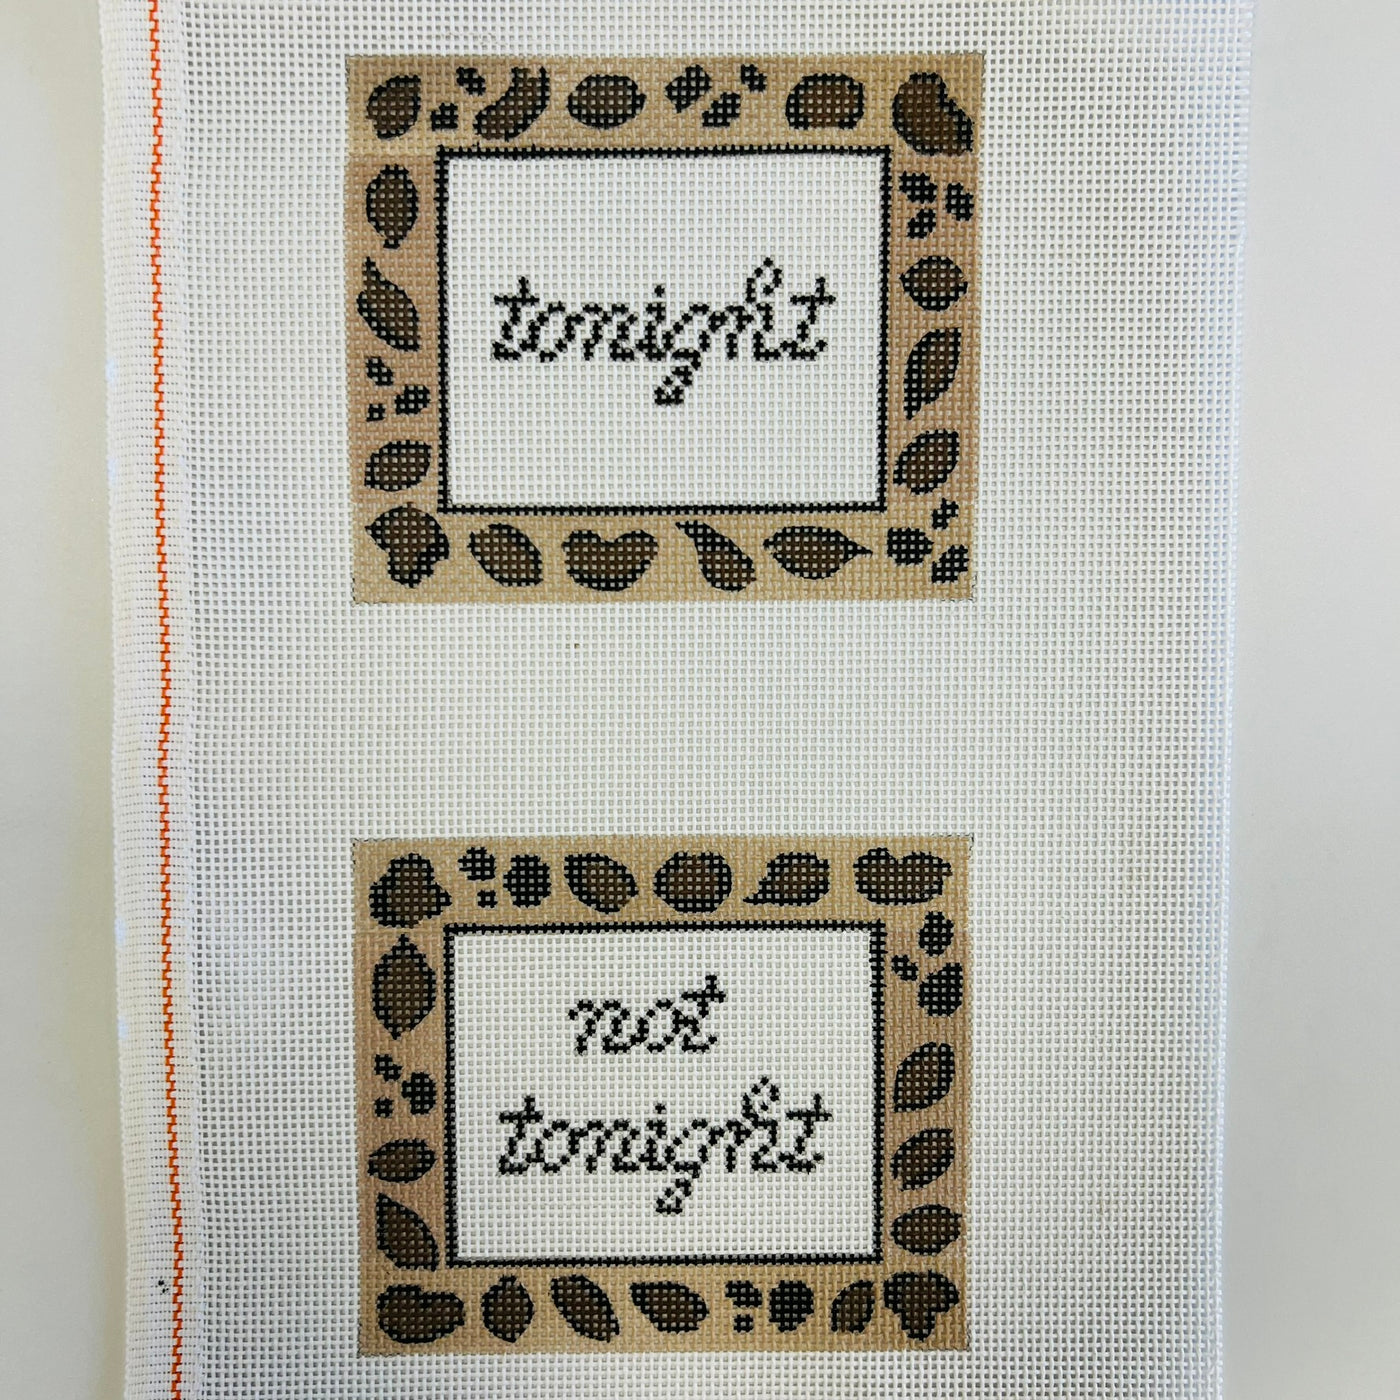 Leopard Tonight/Not Tonight Needlepoint Canvas